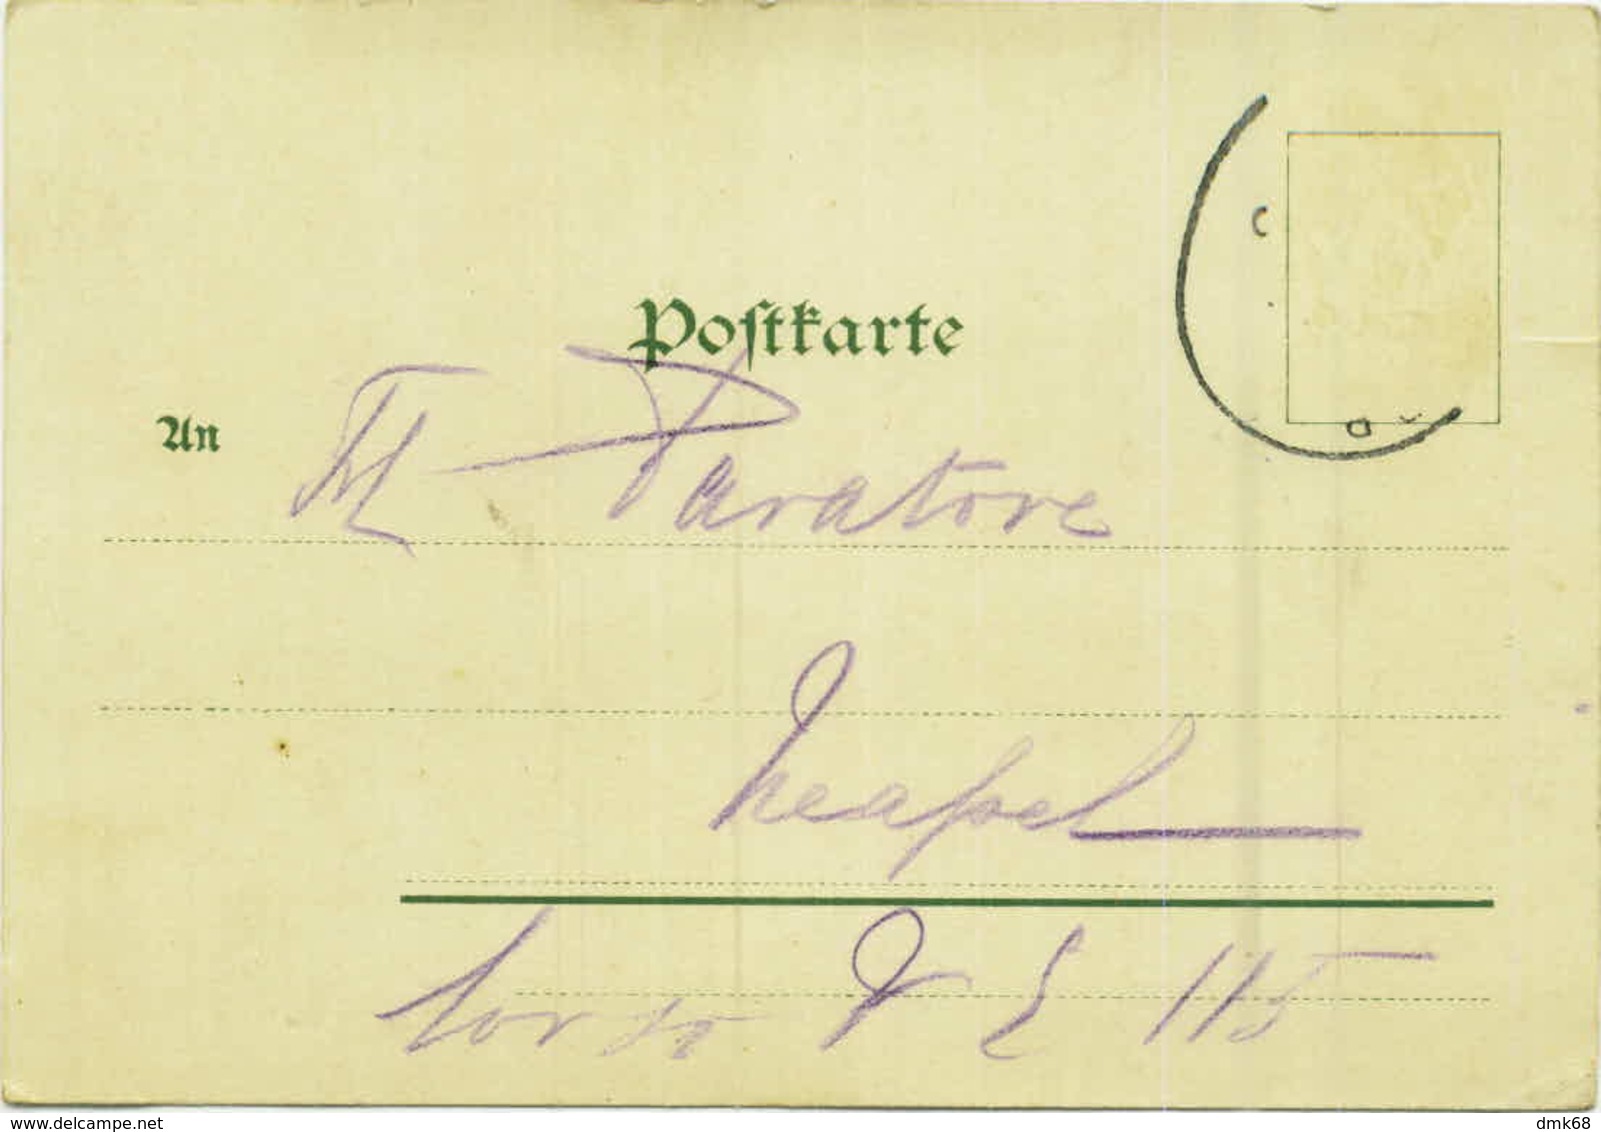 MUNCHEN - ALTE PINAKOTHEK - SUDSEITE - EDIT LUIS GLASER - MAILED BY GIUSEPPE PARATORE ( PALERMO )  1900s ( BG7651) - München